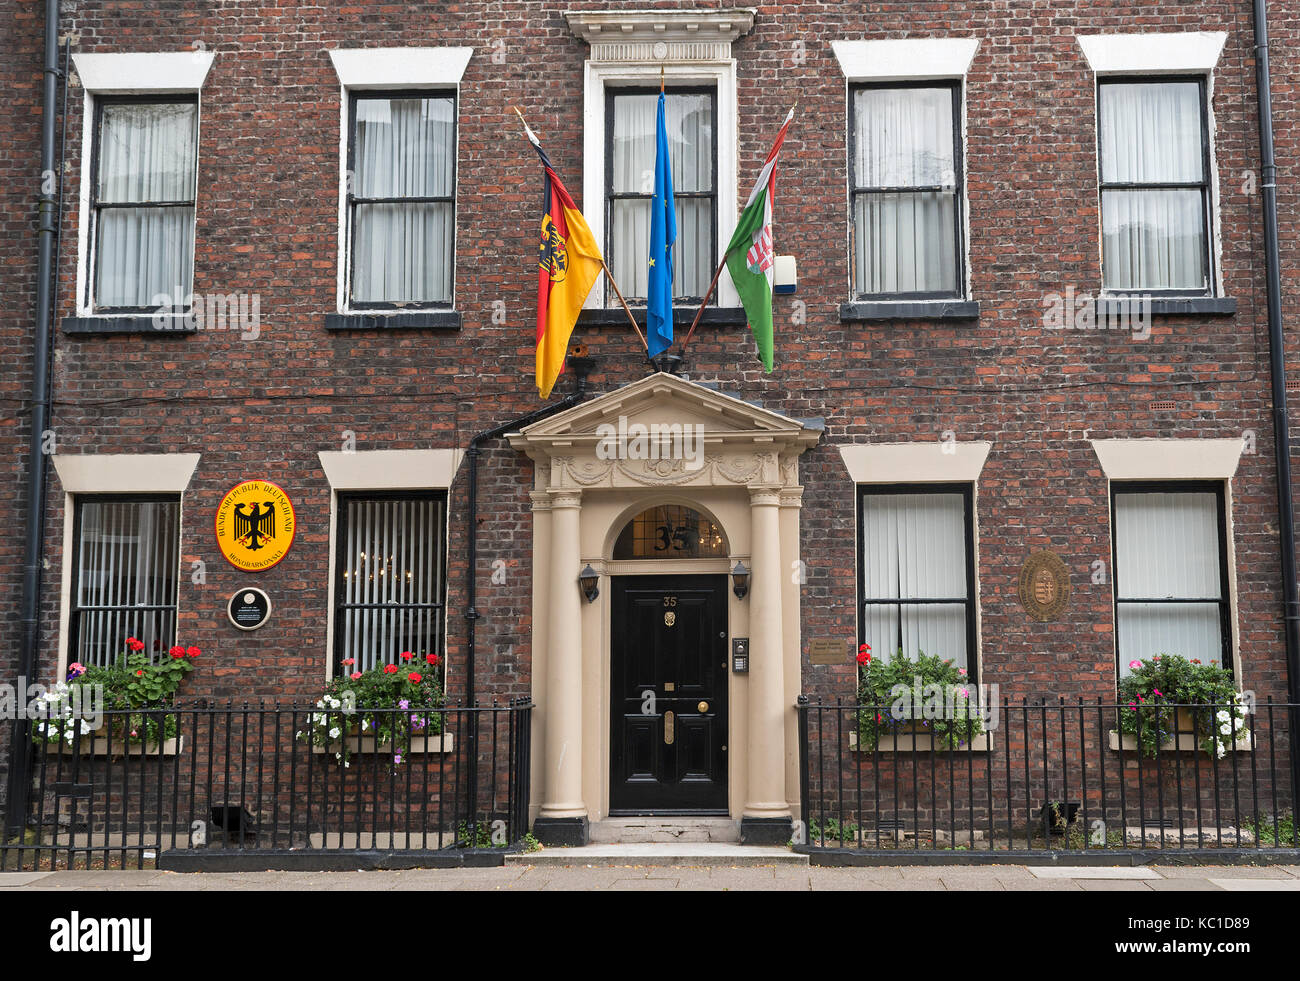 L'ambassade allemande et hungerian dans le quartier géorgien, Rodney Street, Liverpool, Angleterre, Grande-Bretagne, Royaume-Uni. Banque D'Images